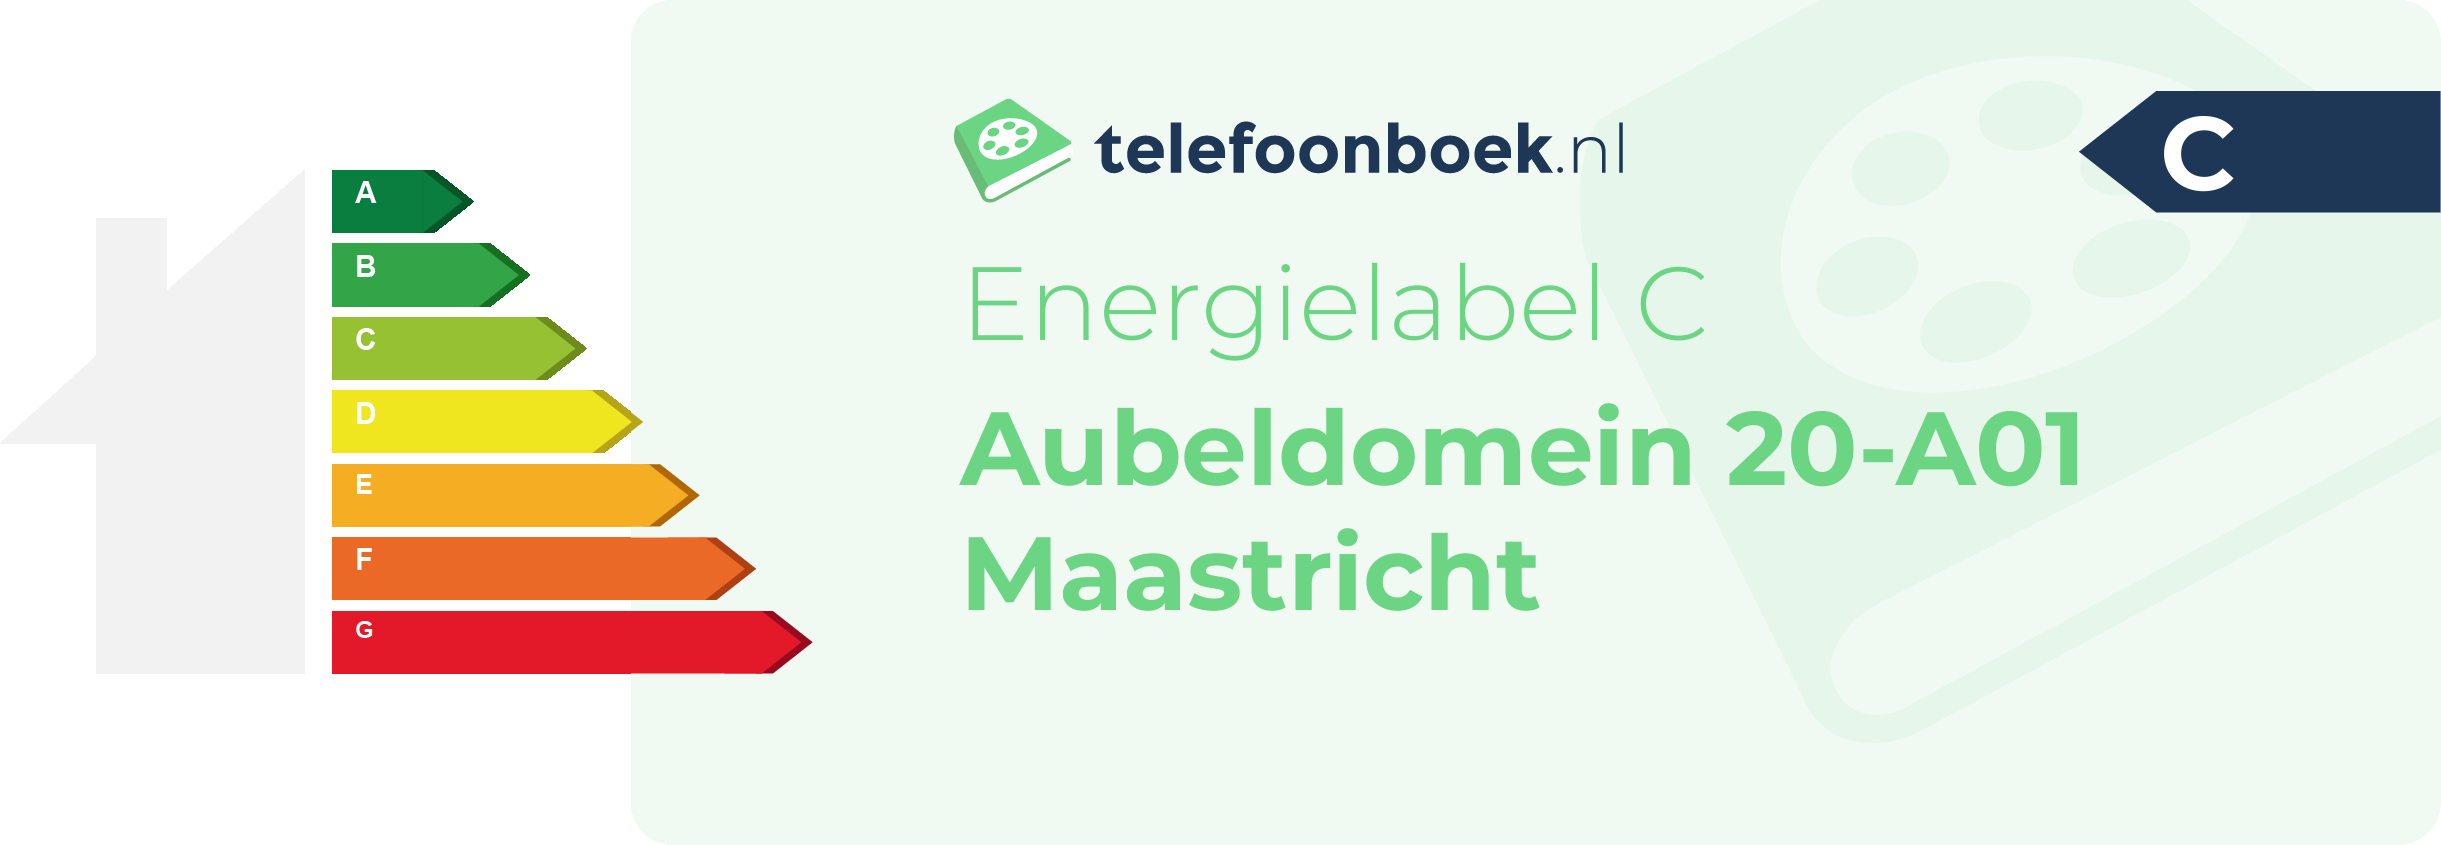 Energielabel Aubeldomein 20-A01 Maastricht